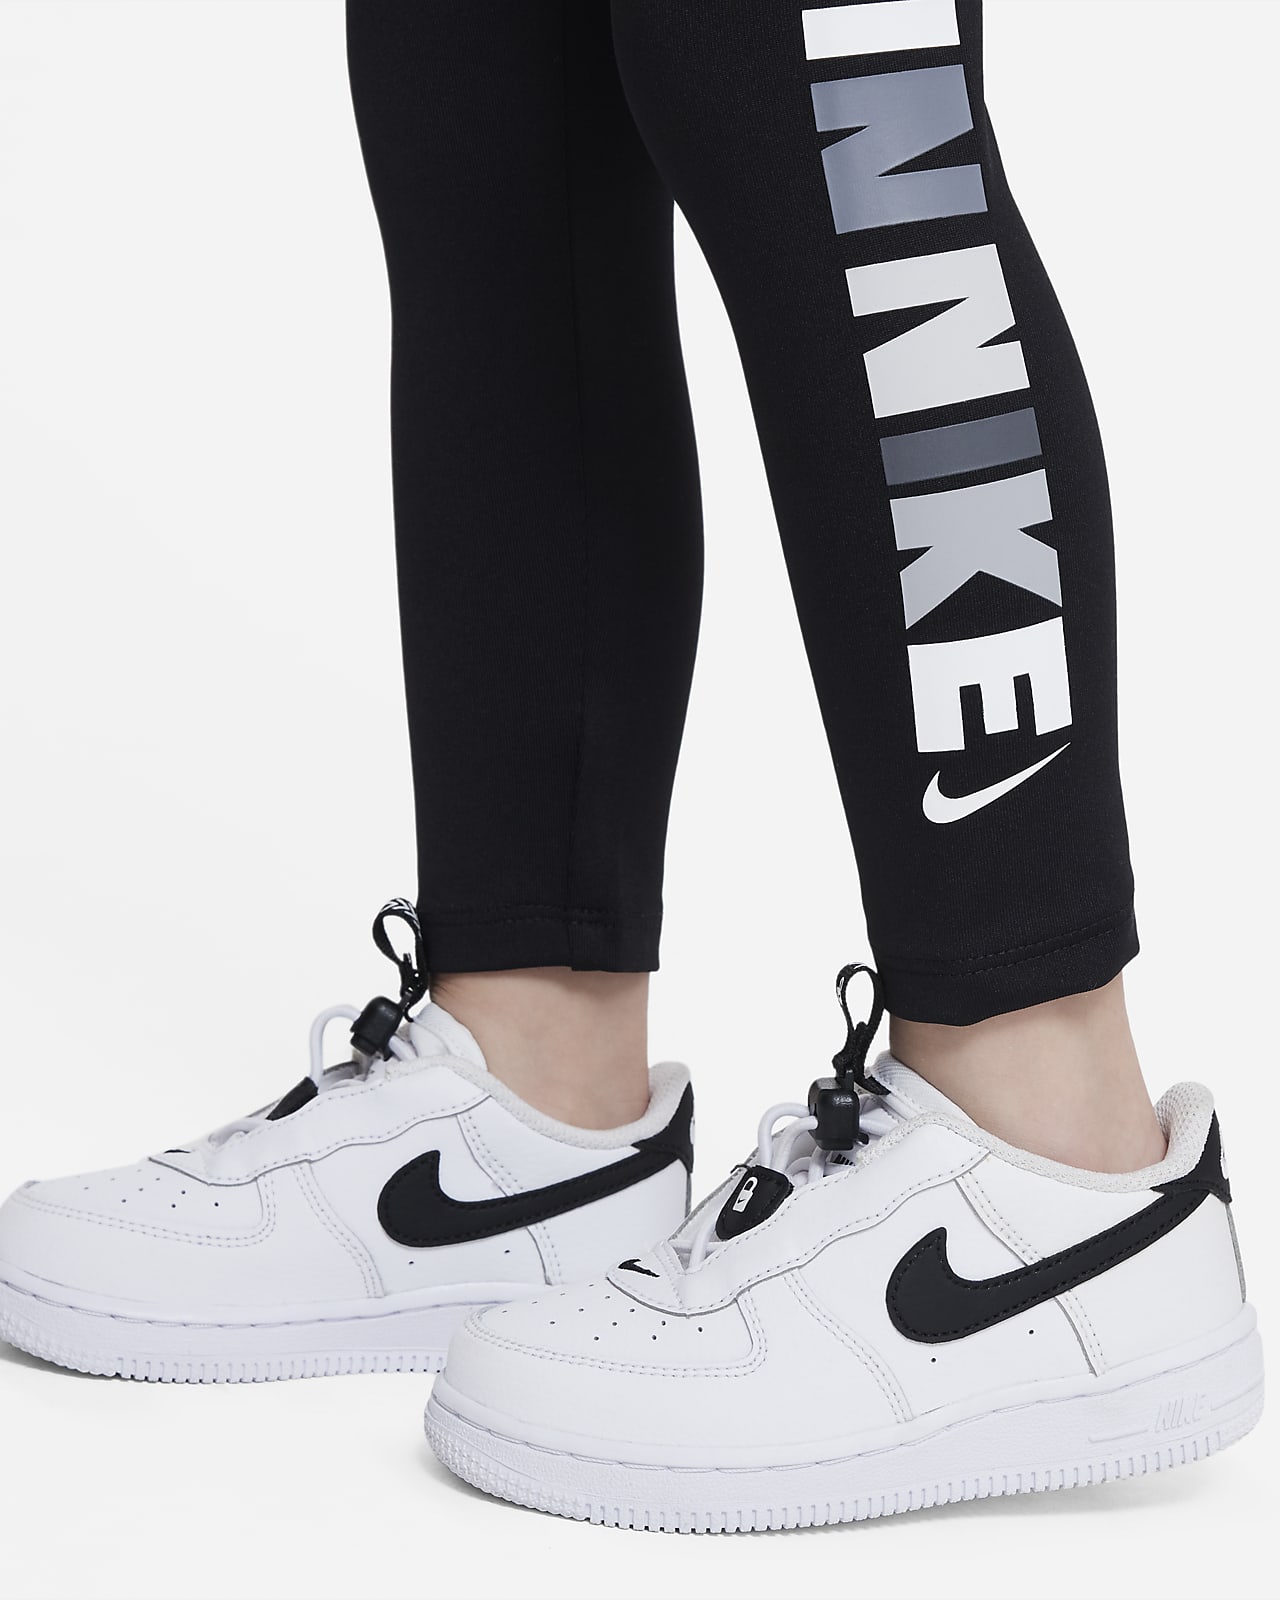 Nike Block Leggings Little Kids' Leggings